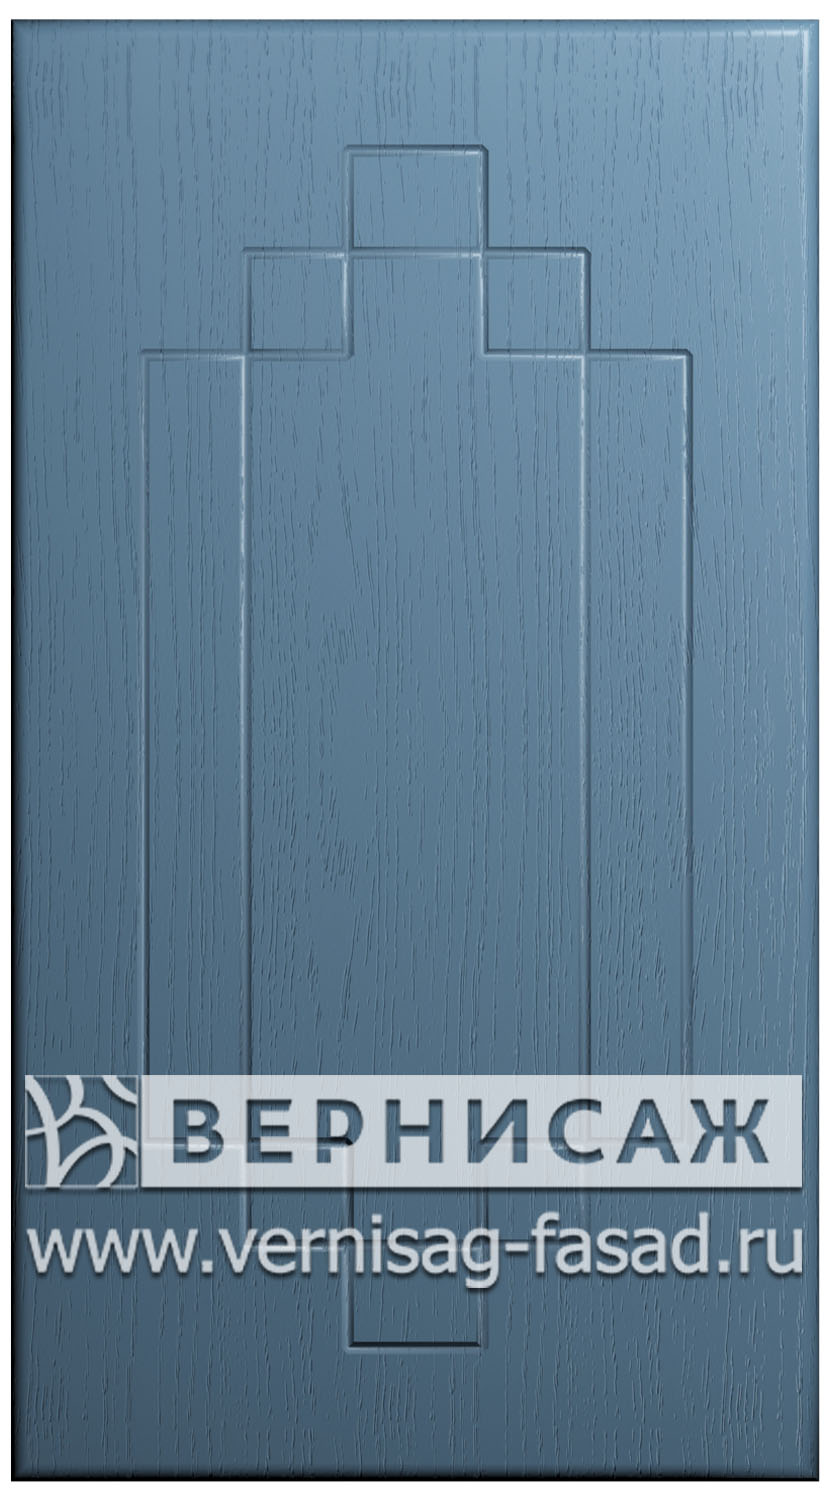  Фасады в пленке ПВХ, Фрезеровка № 37, цвет Массив Деним